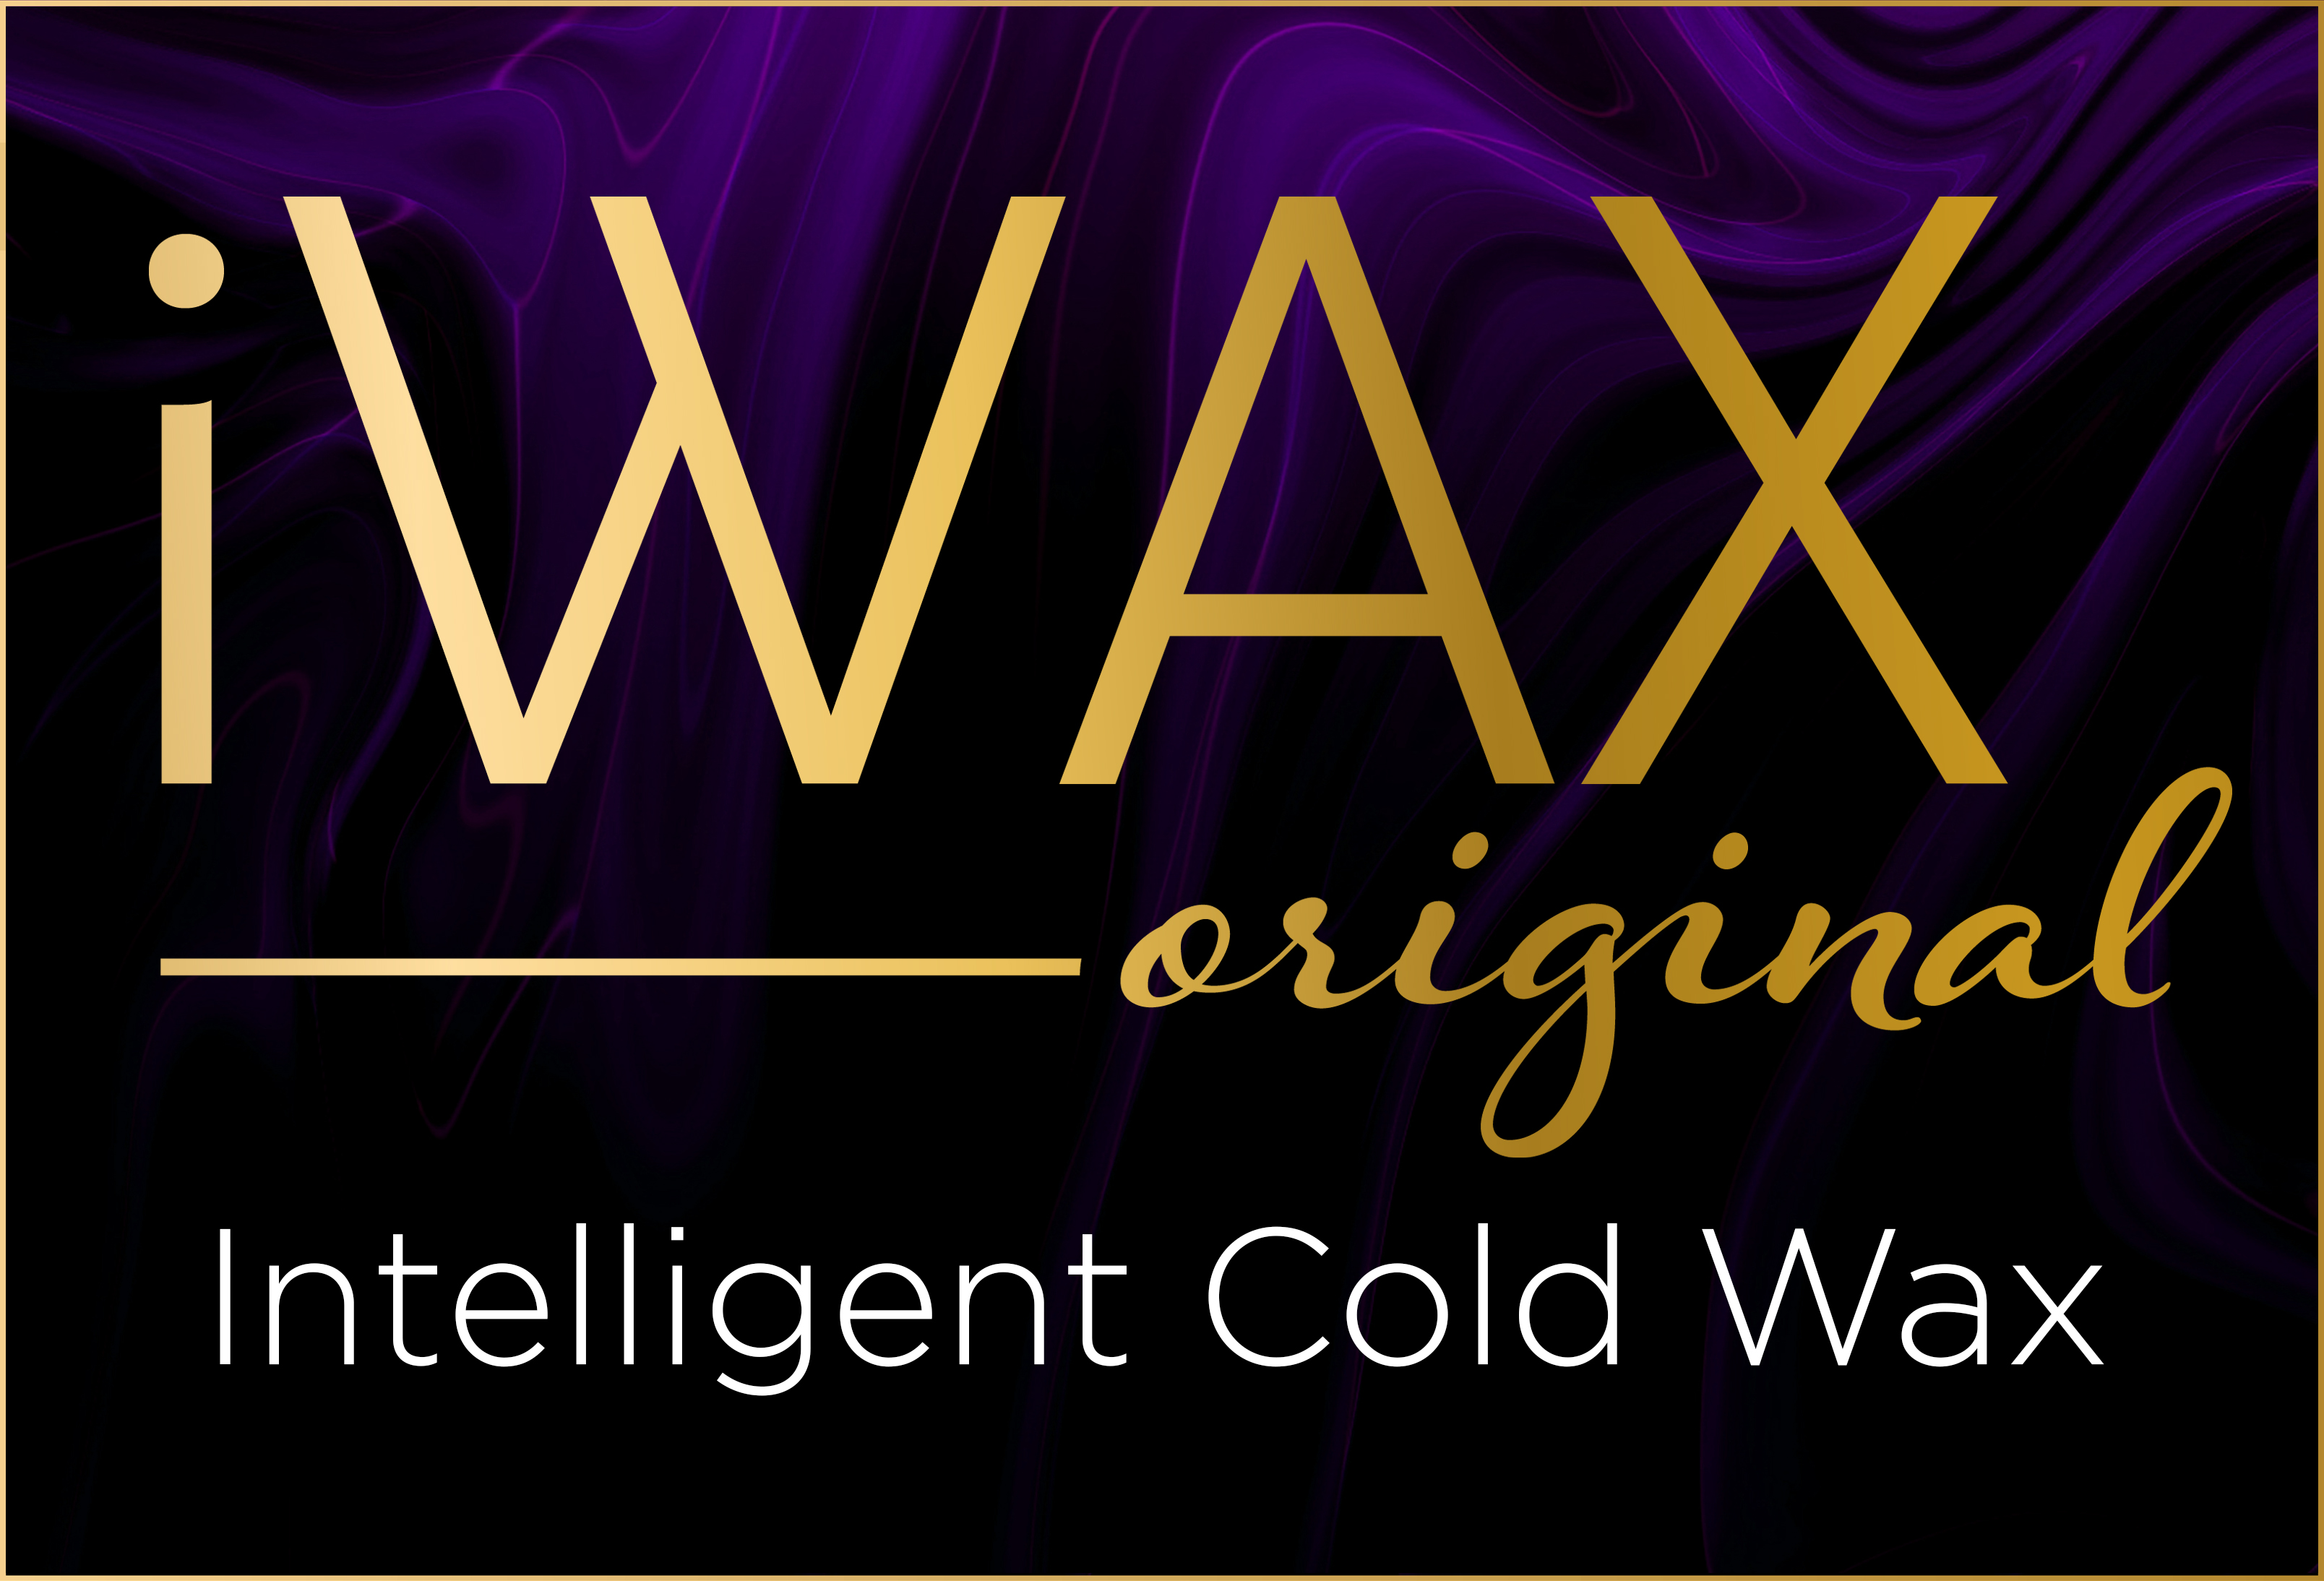 Iwax